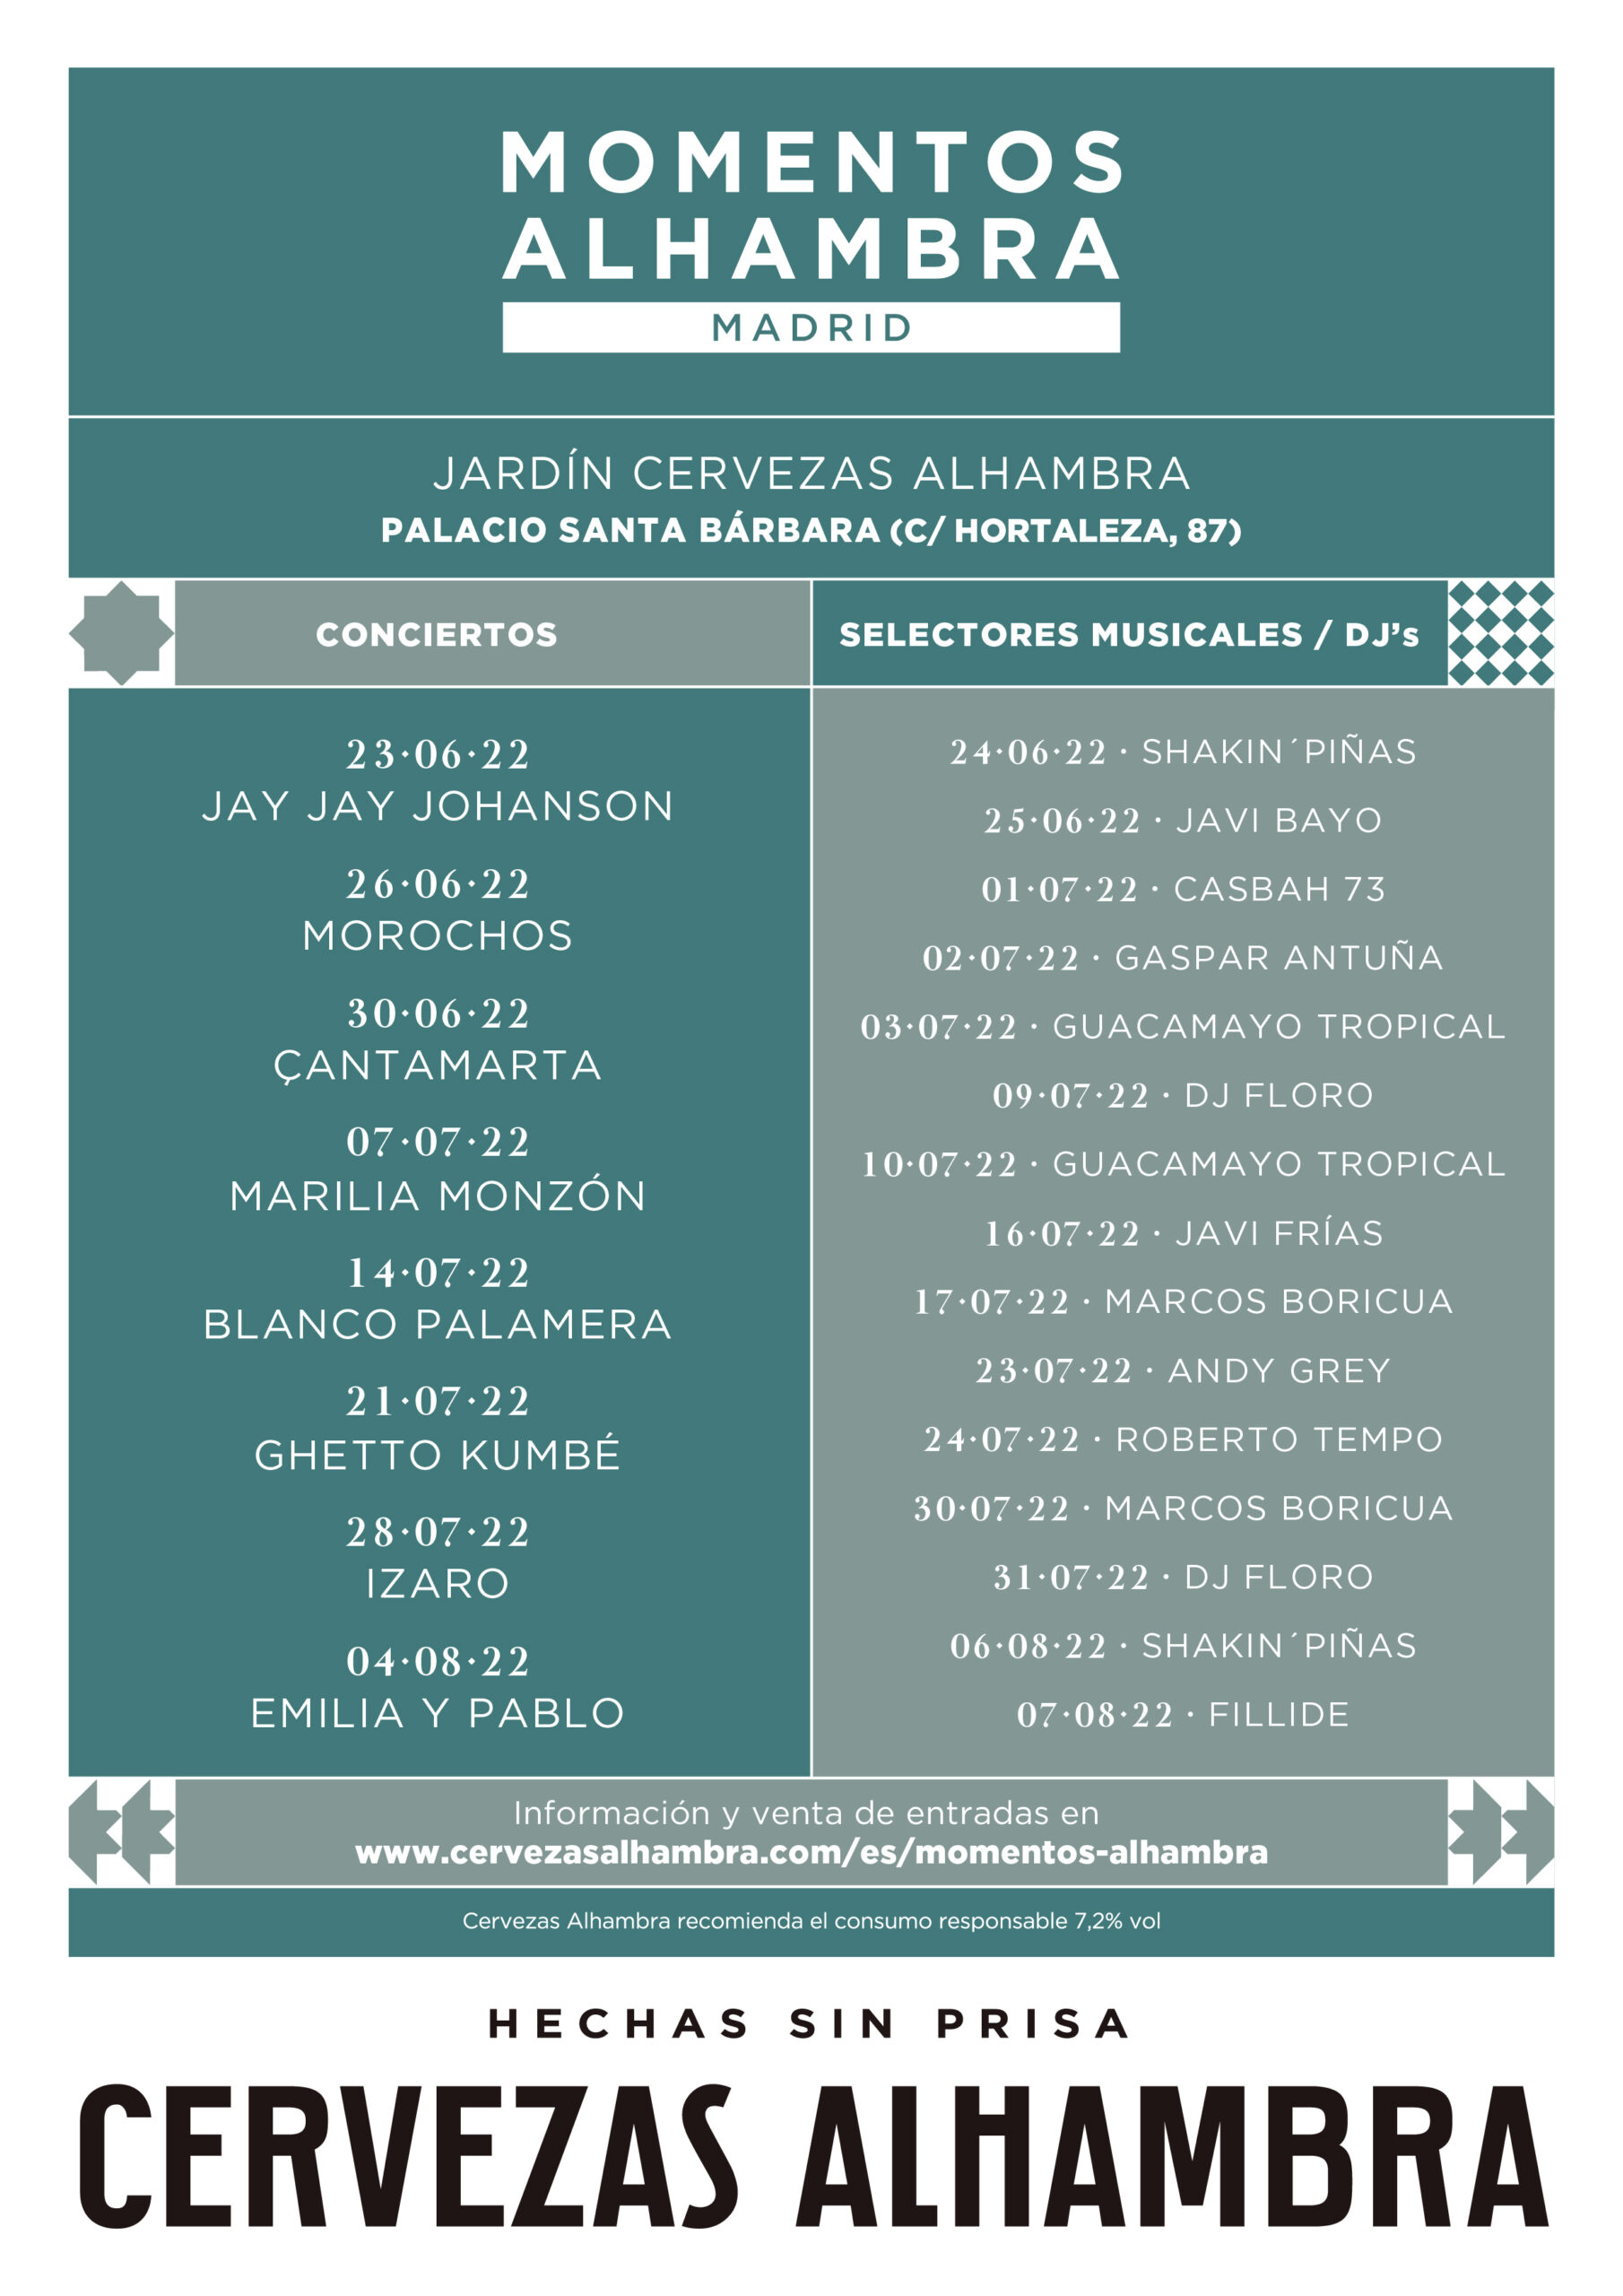 Conciertos Momentos Alhambra en Jardin Cervezas Alhambra Madrid